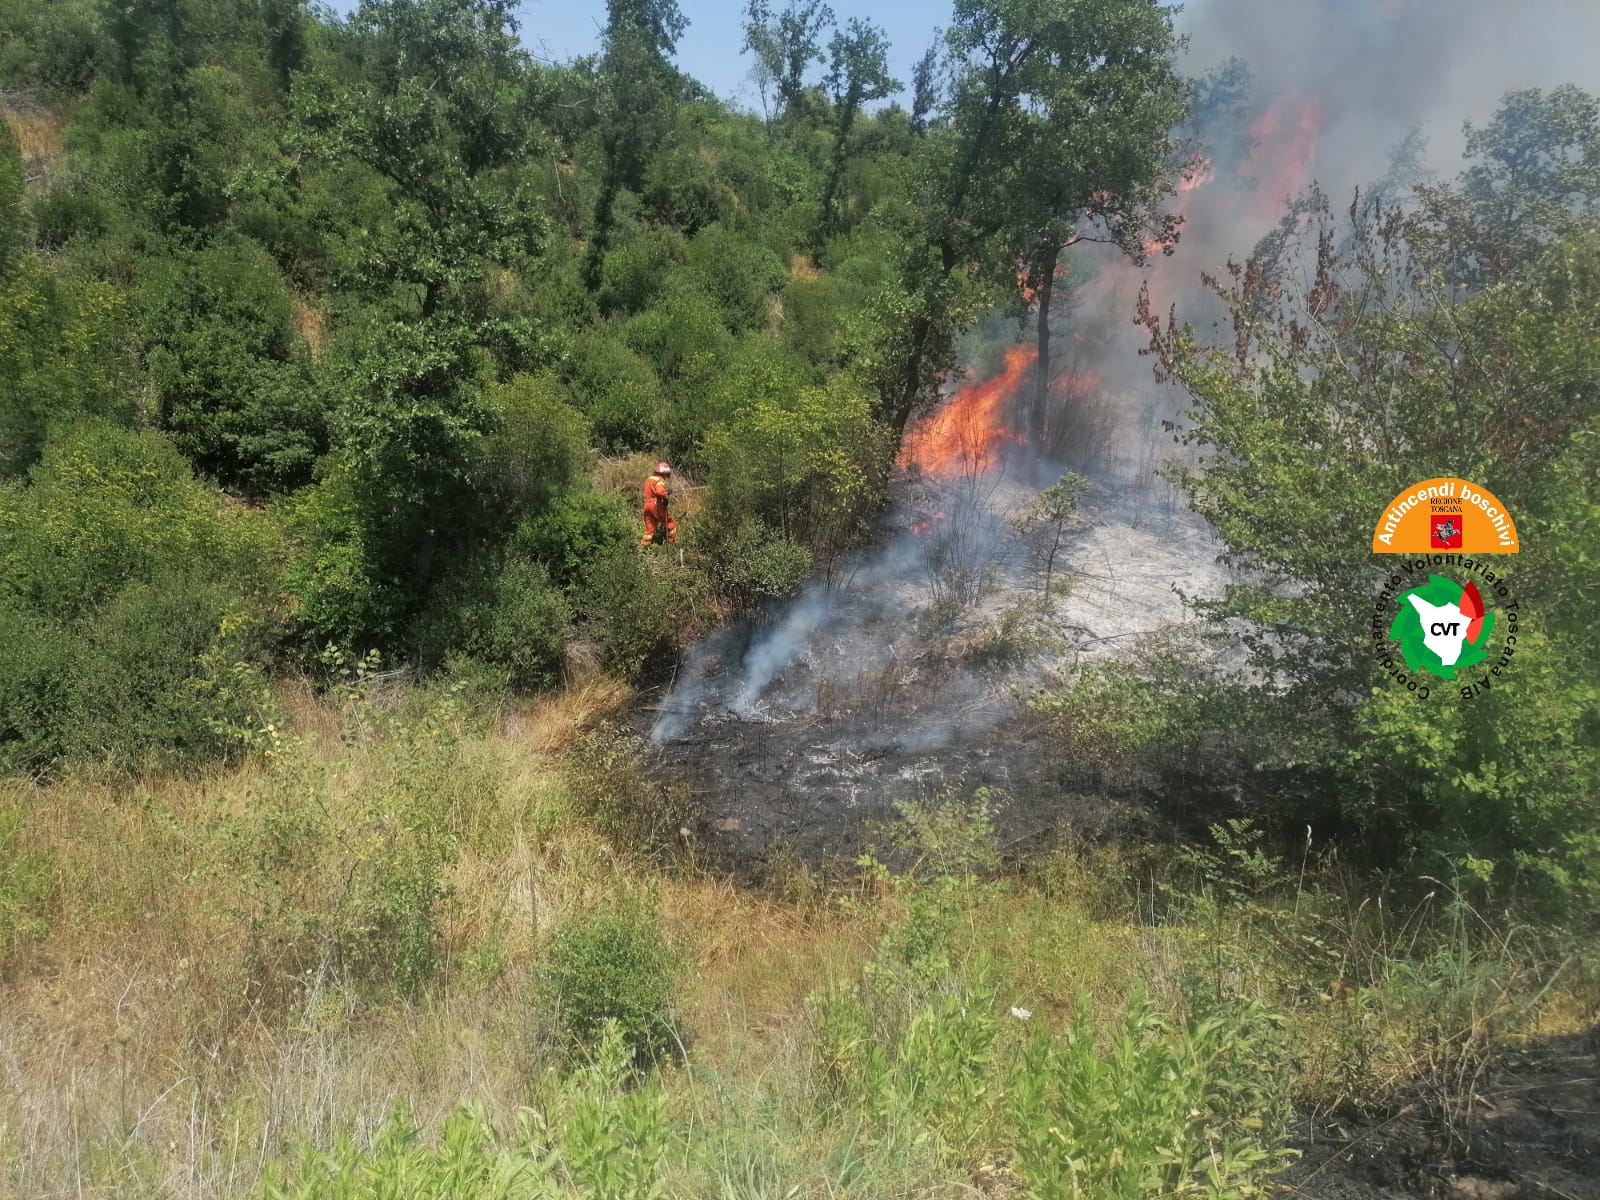 Incendio in corso a Manciano (Gr), in azione 2 elicotteri e squadre di terra